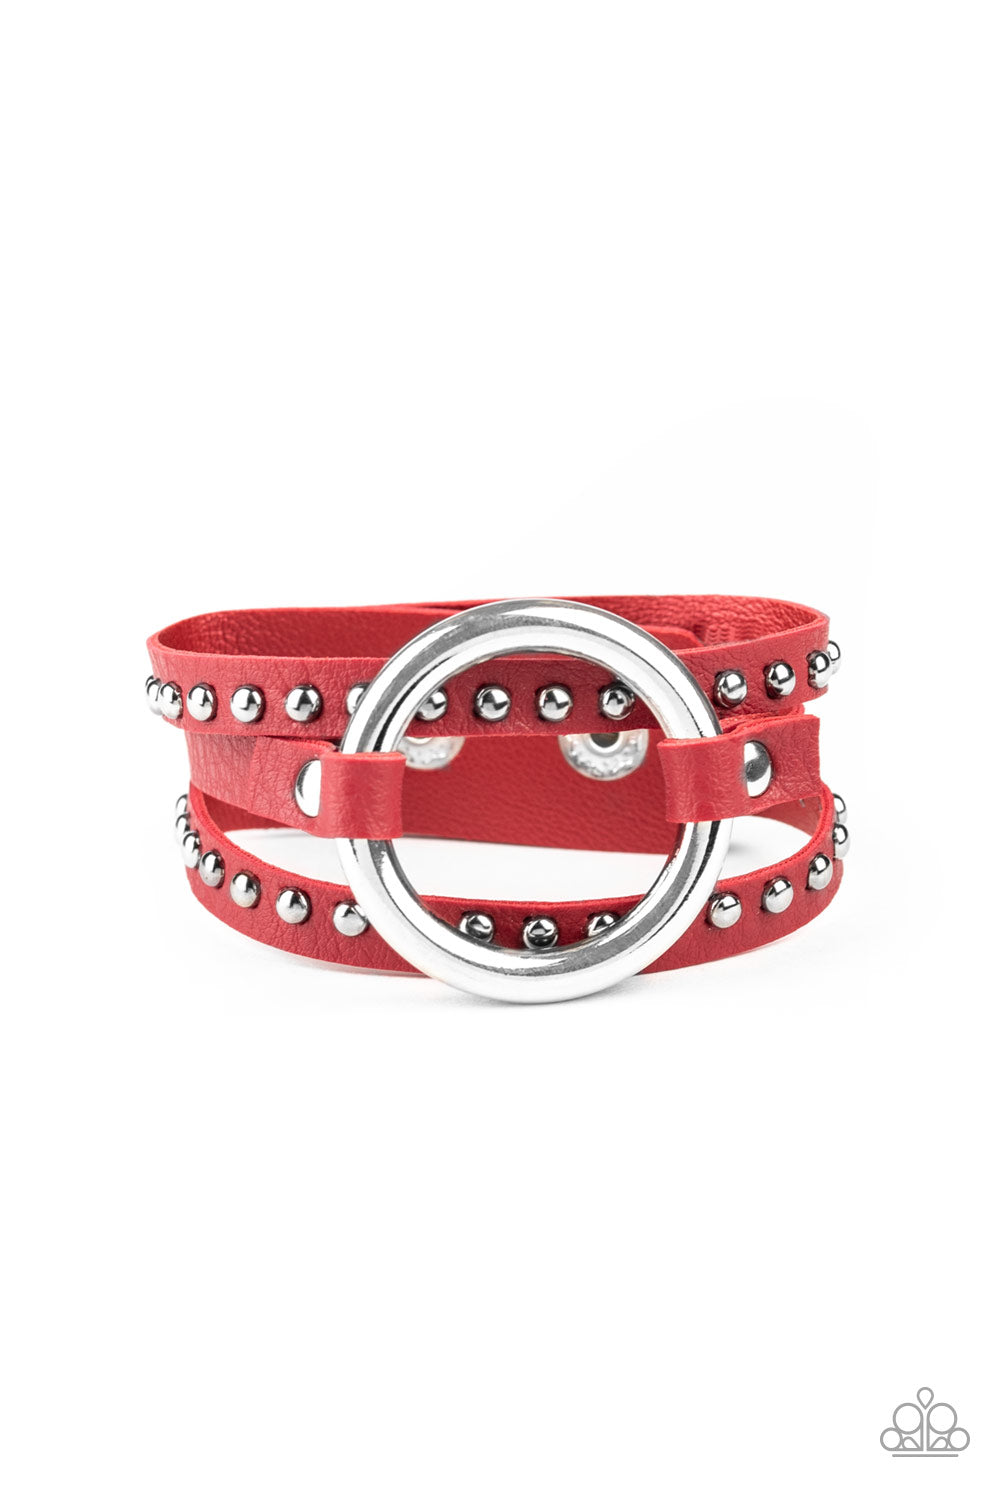 Paparazzi Bracelet ~ Studded Statement-Maker - Red